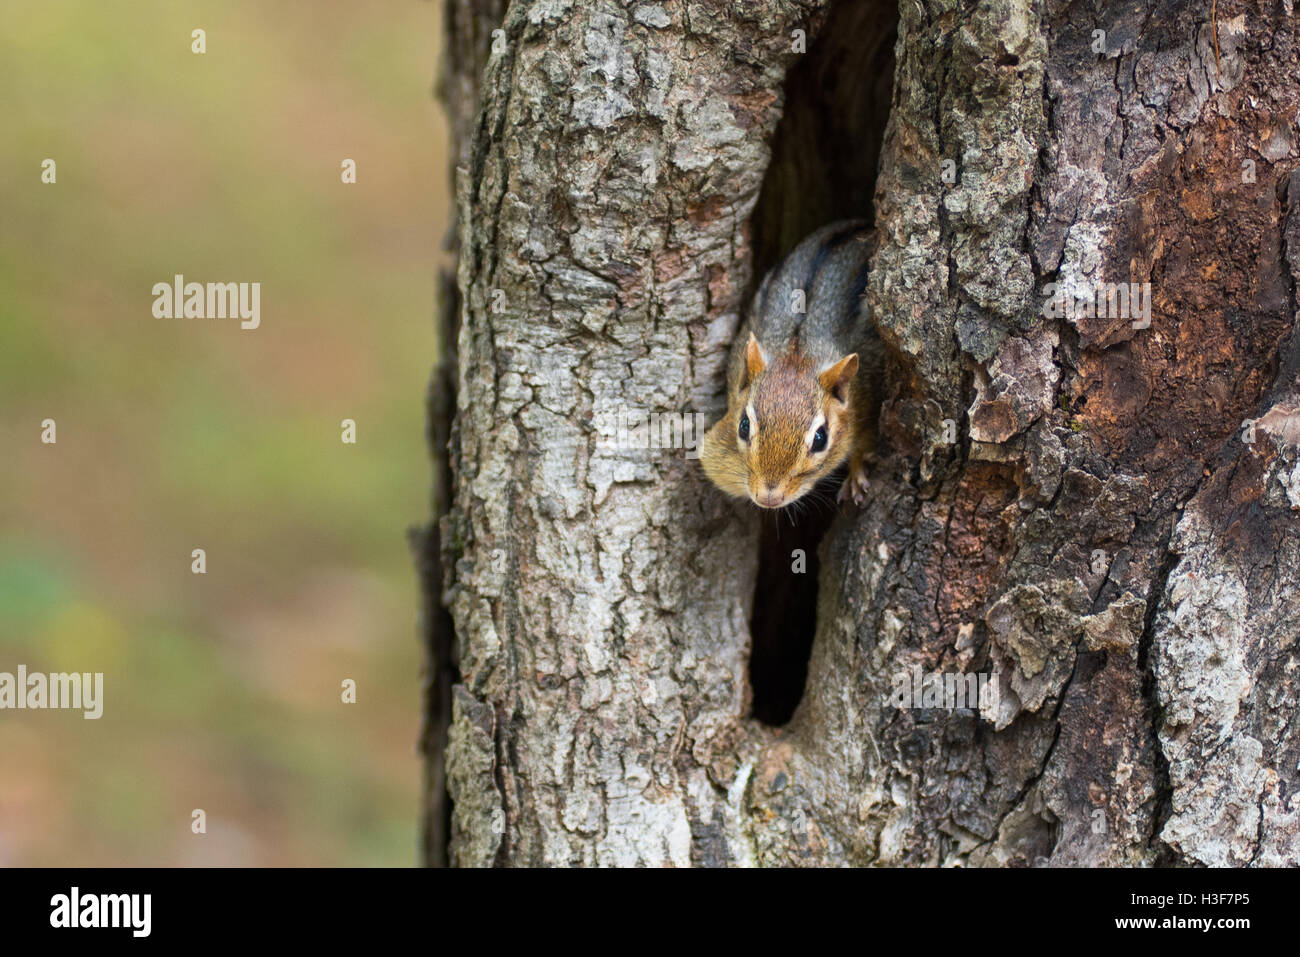 Östliche Chipmunk (Tamias) späht heraus aus seinem Versteck Loch in einem Baum. Stockfoto